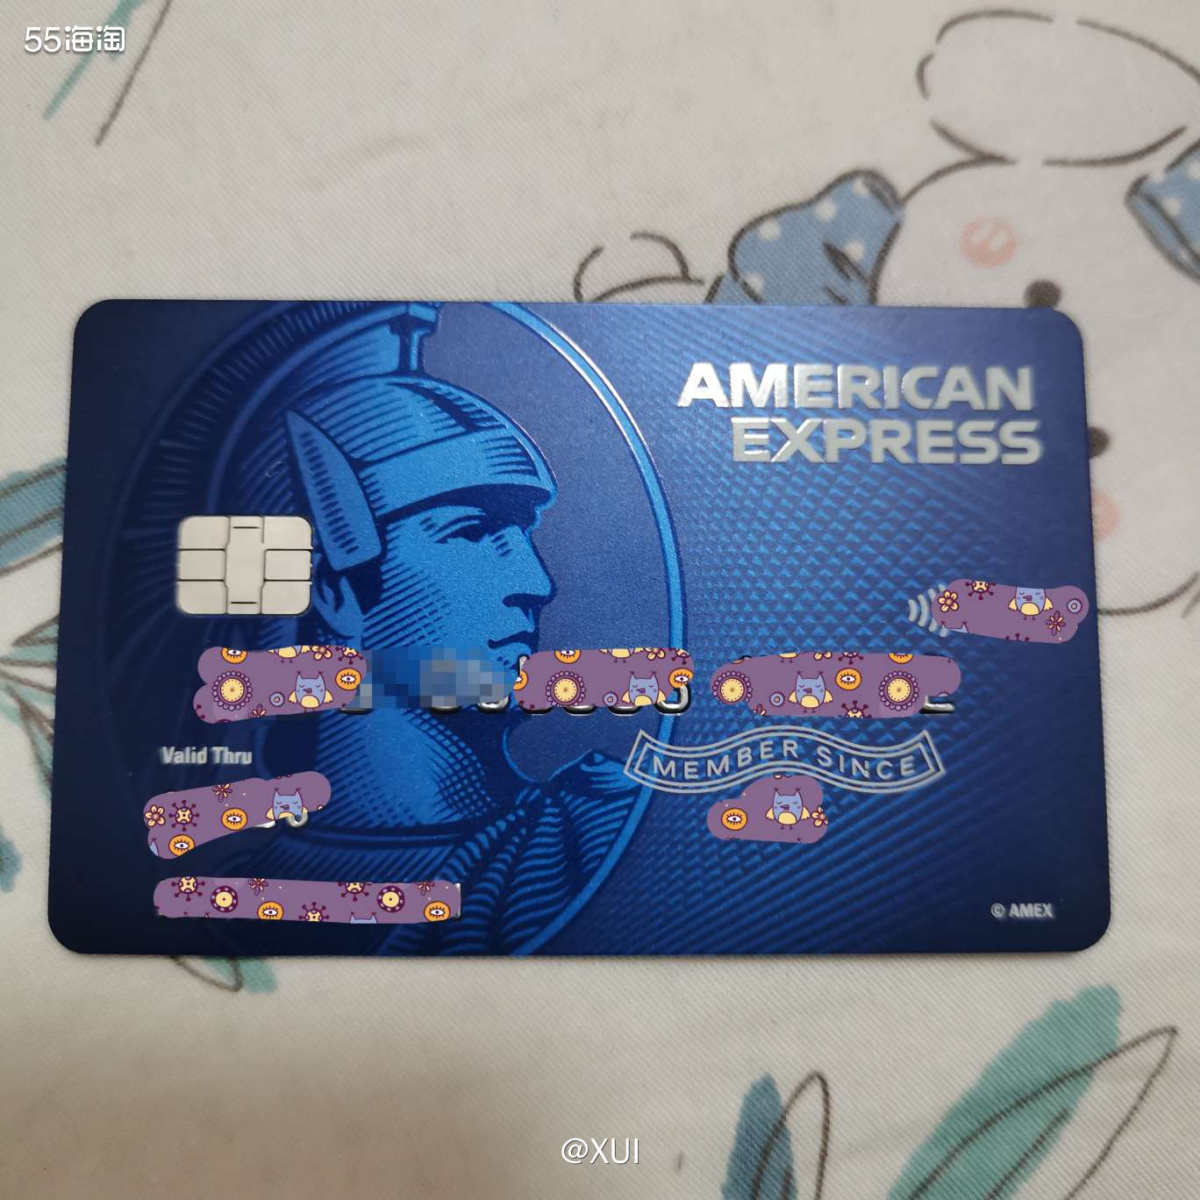 美国运通信用卡图片